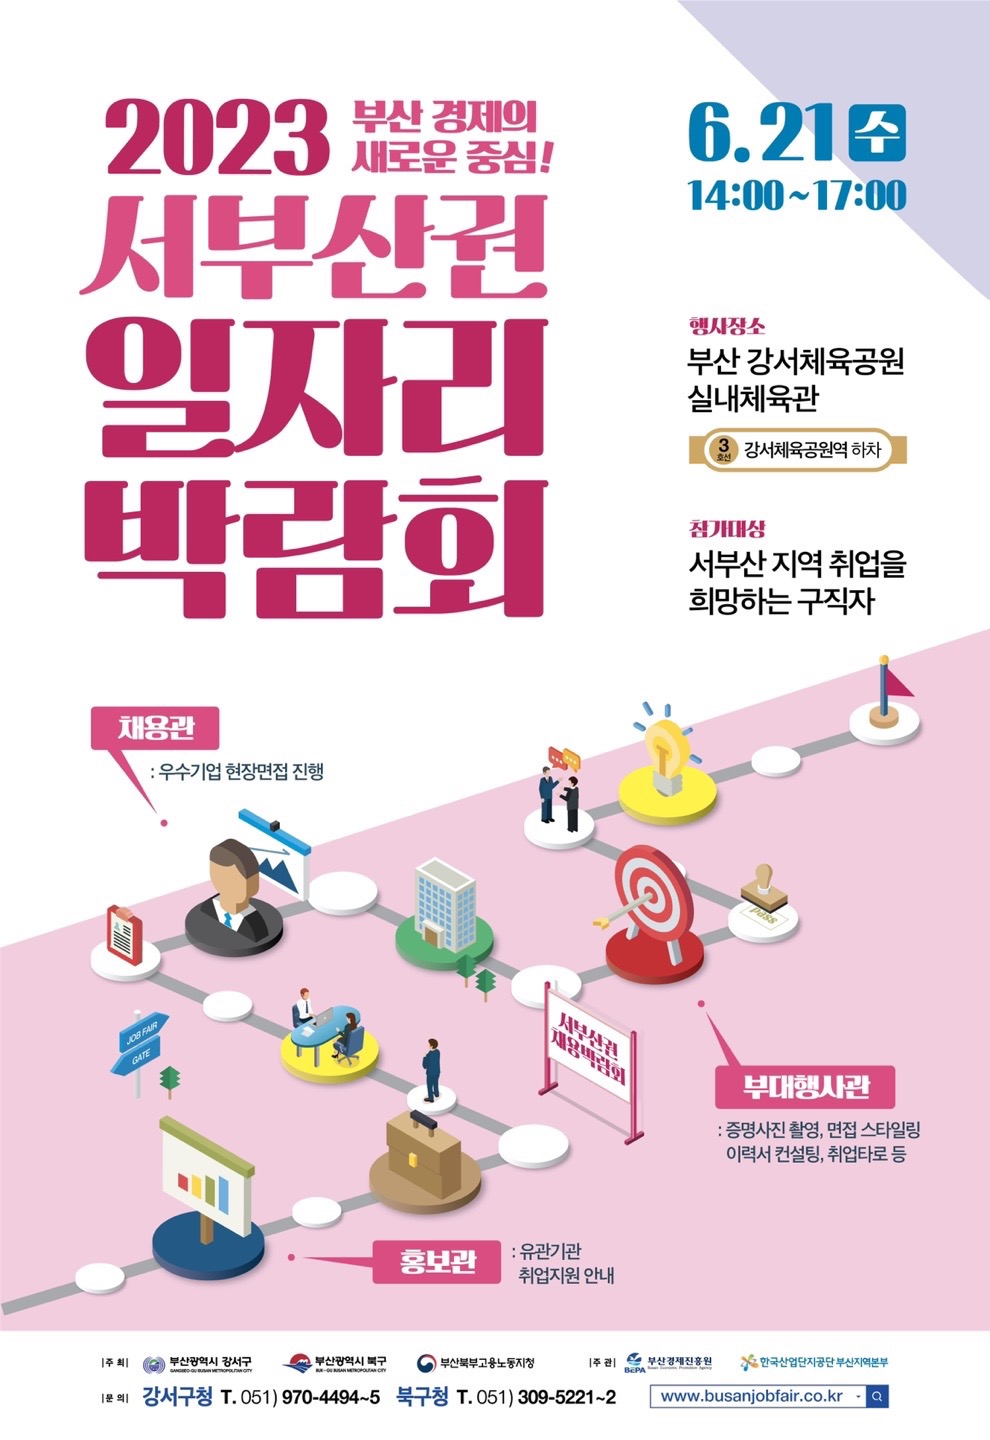 「2023 서부산권 일자리박람회」 참가기업 현황